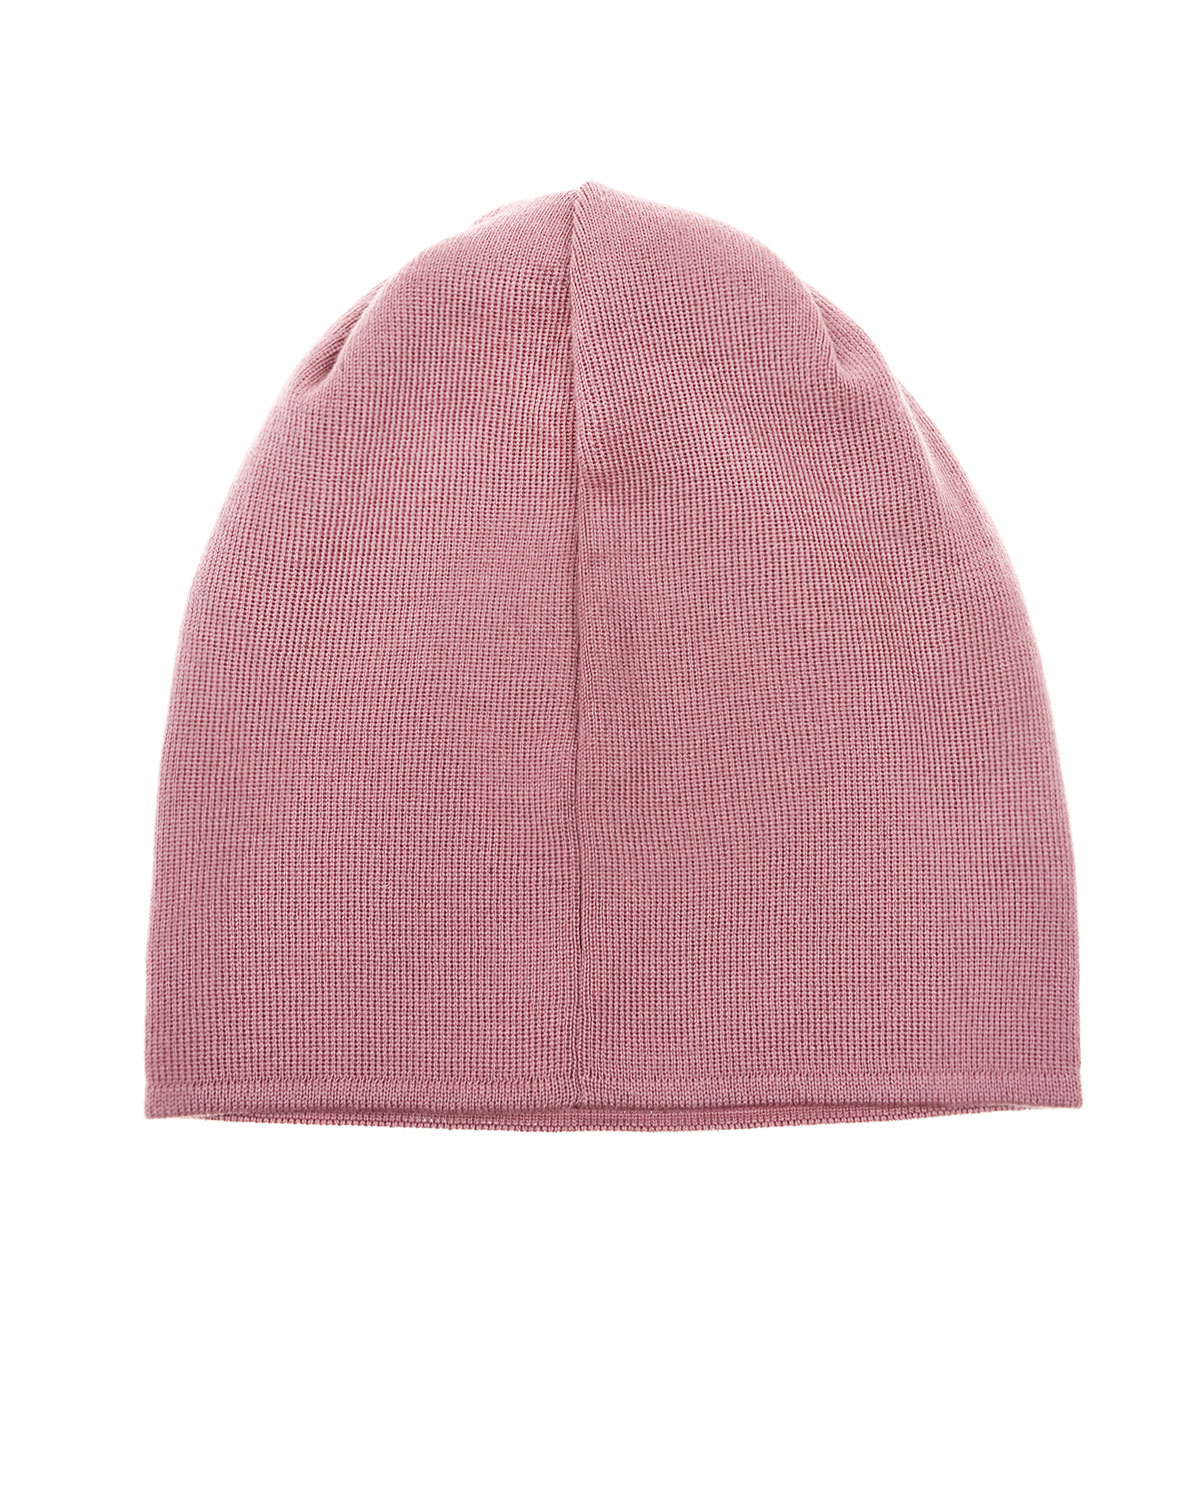 Шерстяная шапка с нашивкой CAPO, размер unica, цвет розовый - фото 2